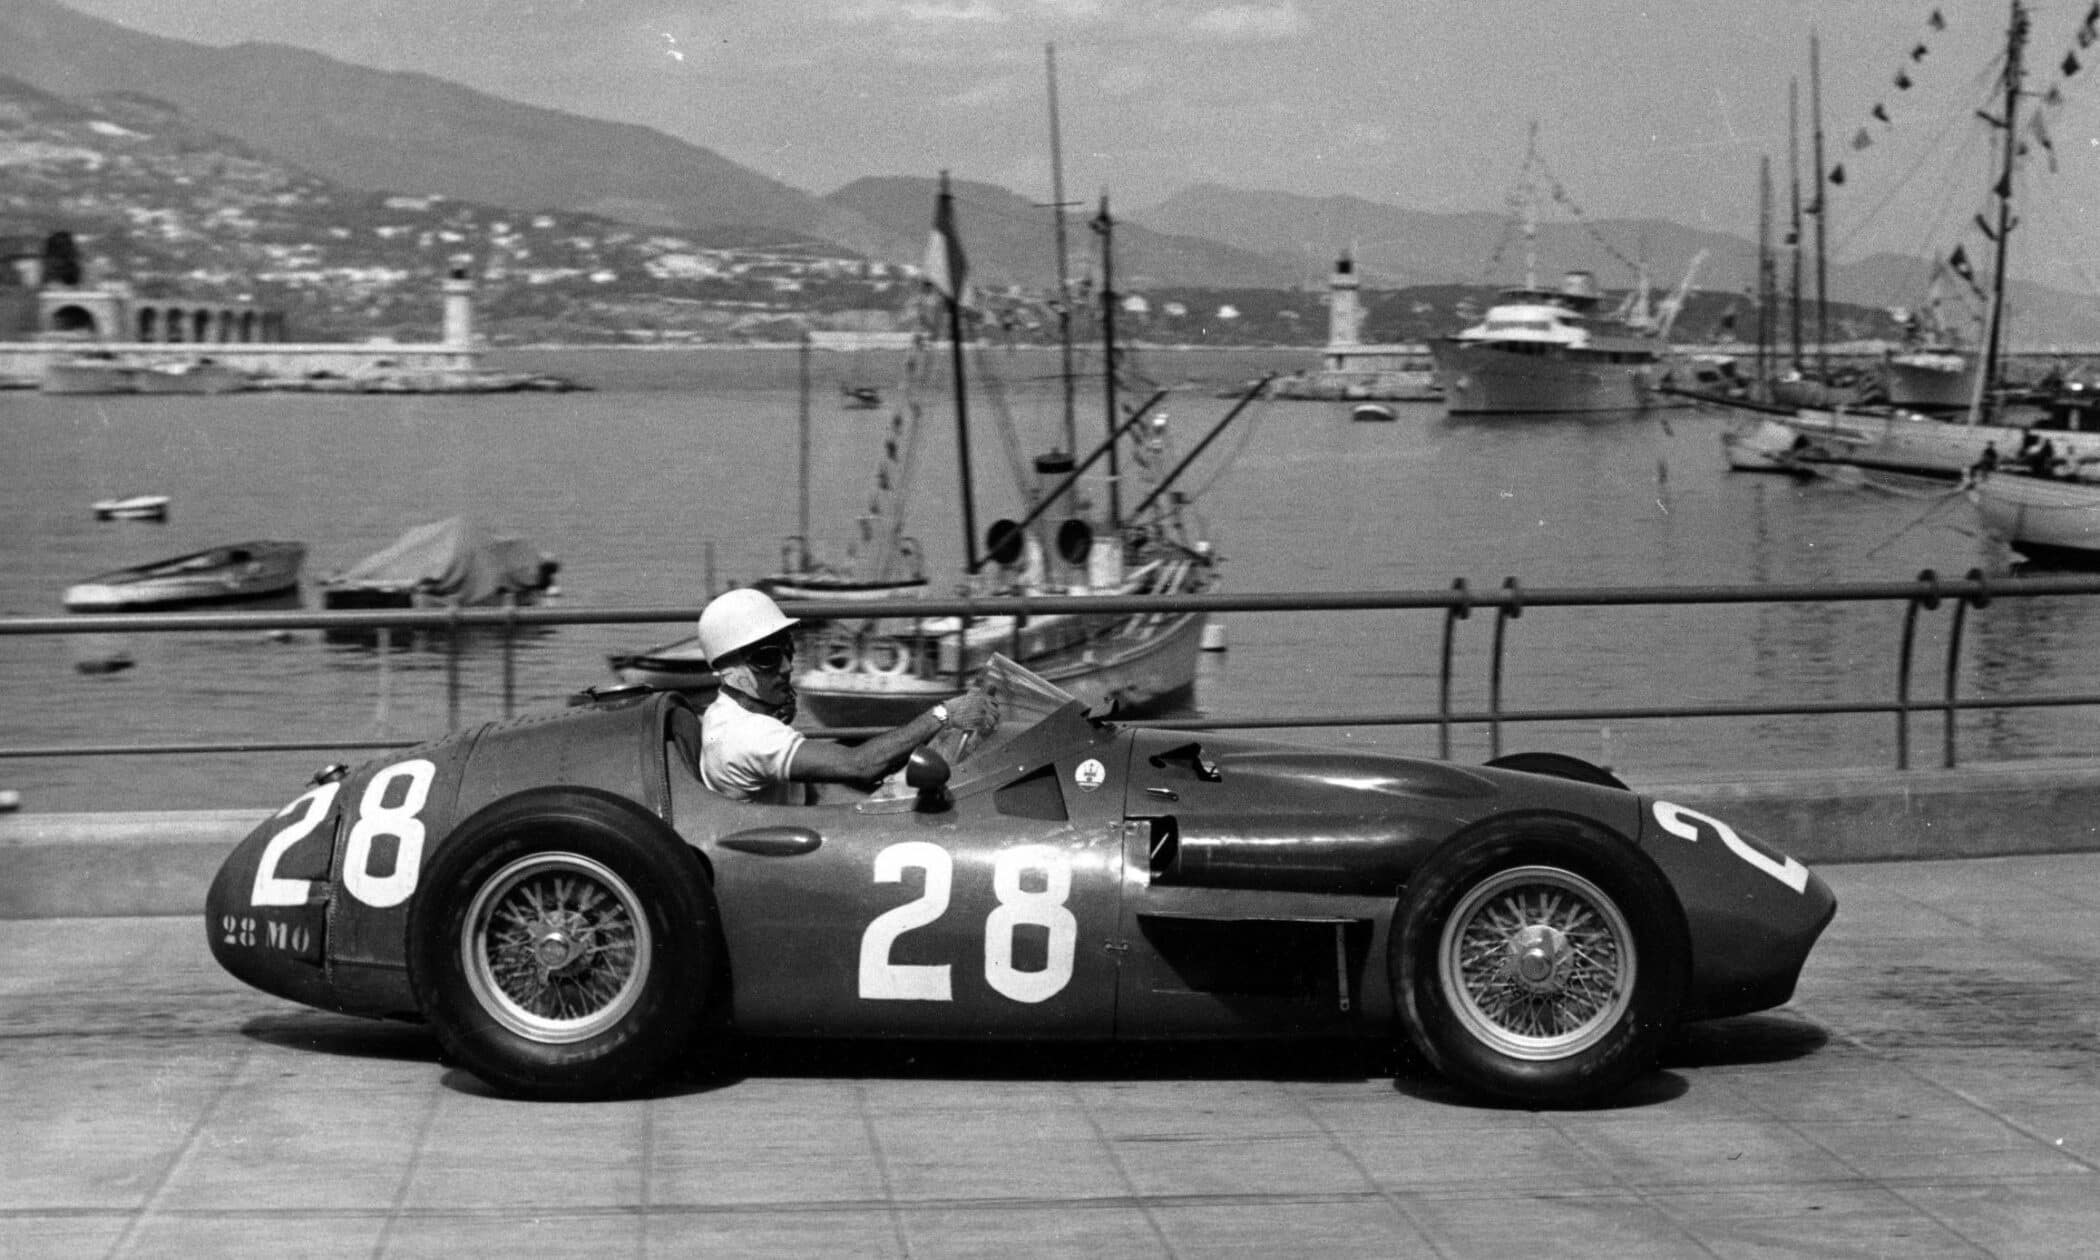 Monaco Grand Prix, Stirling Moss